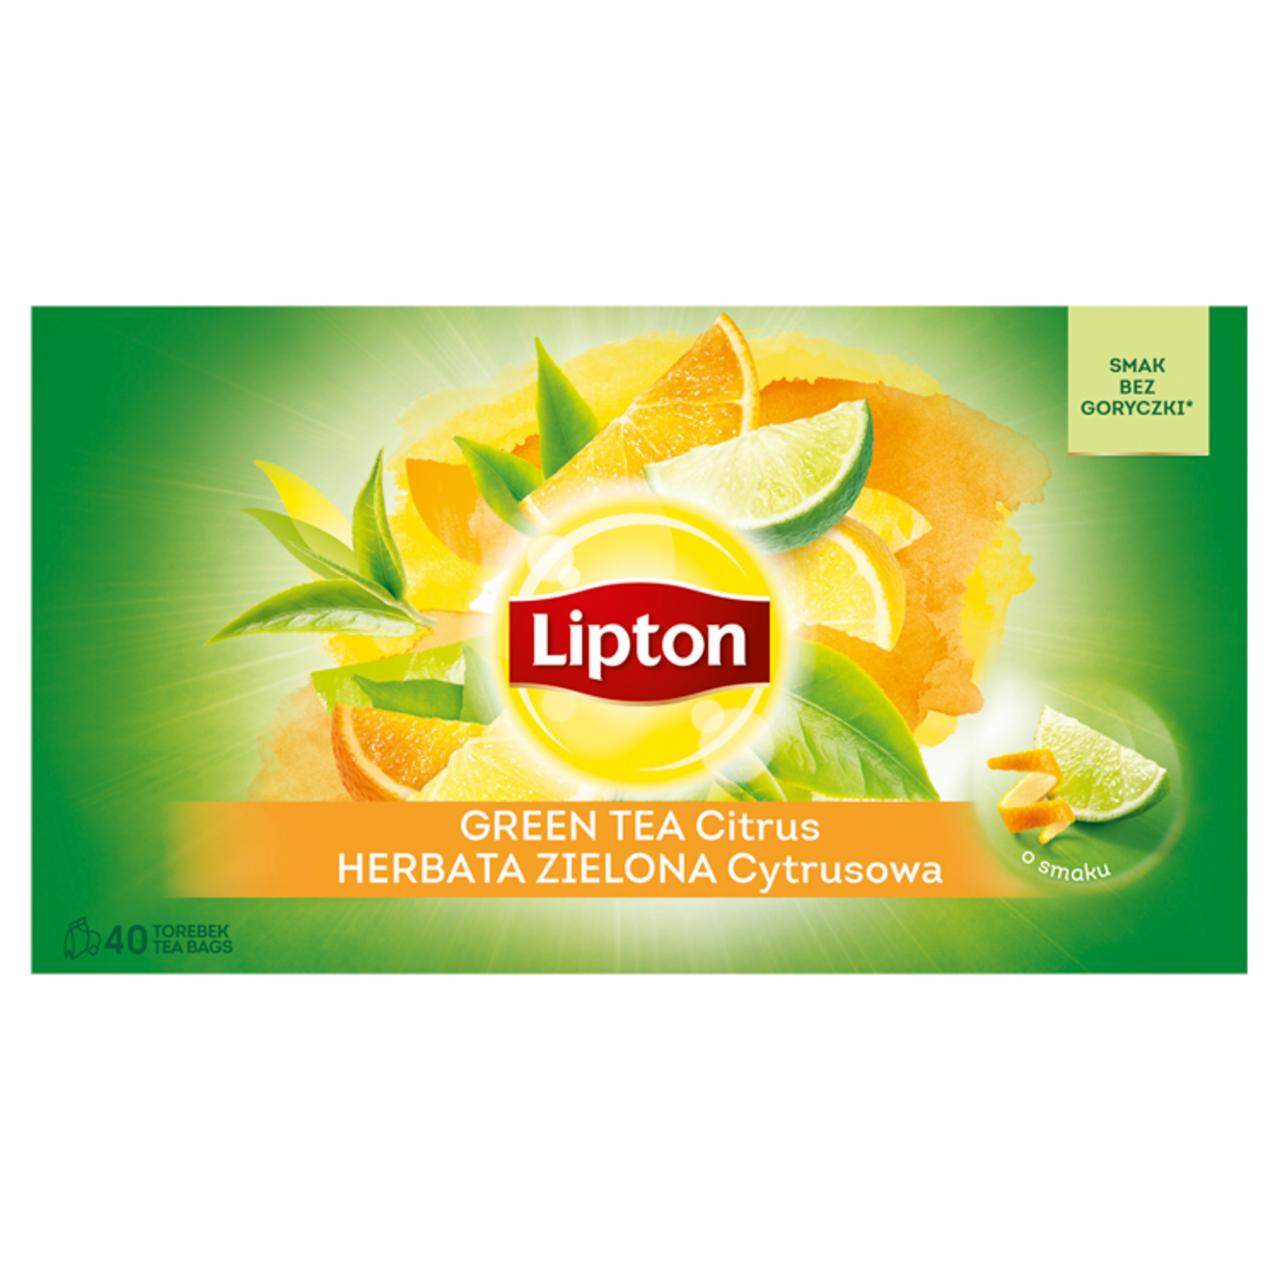 Zdjęcia - Lipton Herbata zielona cytrusowa 52 g (40 torebek)